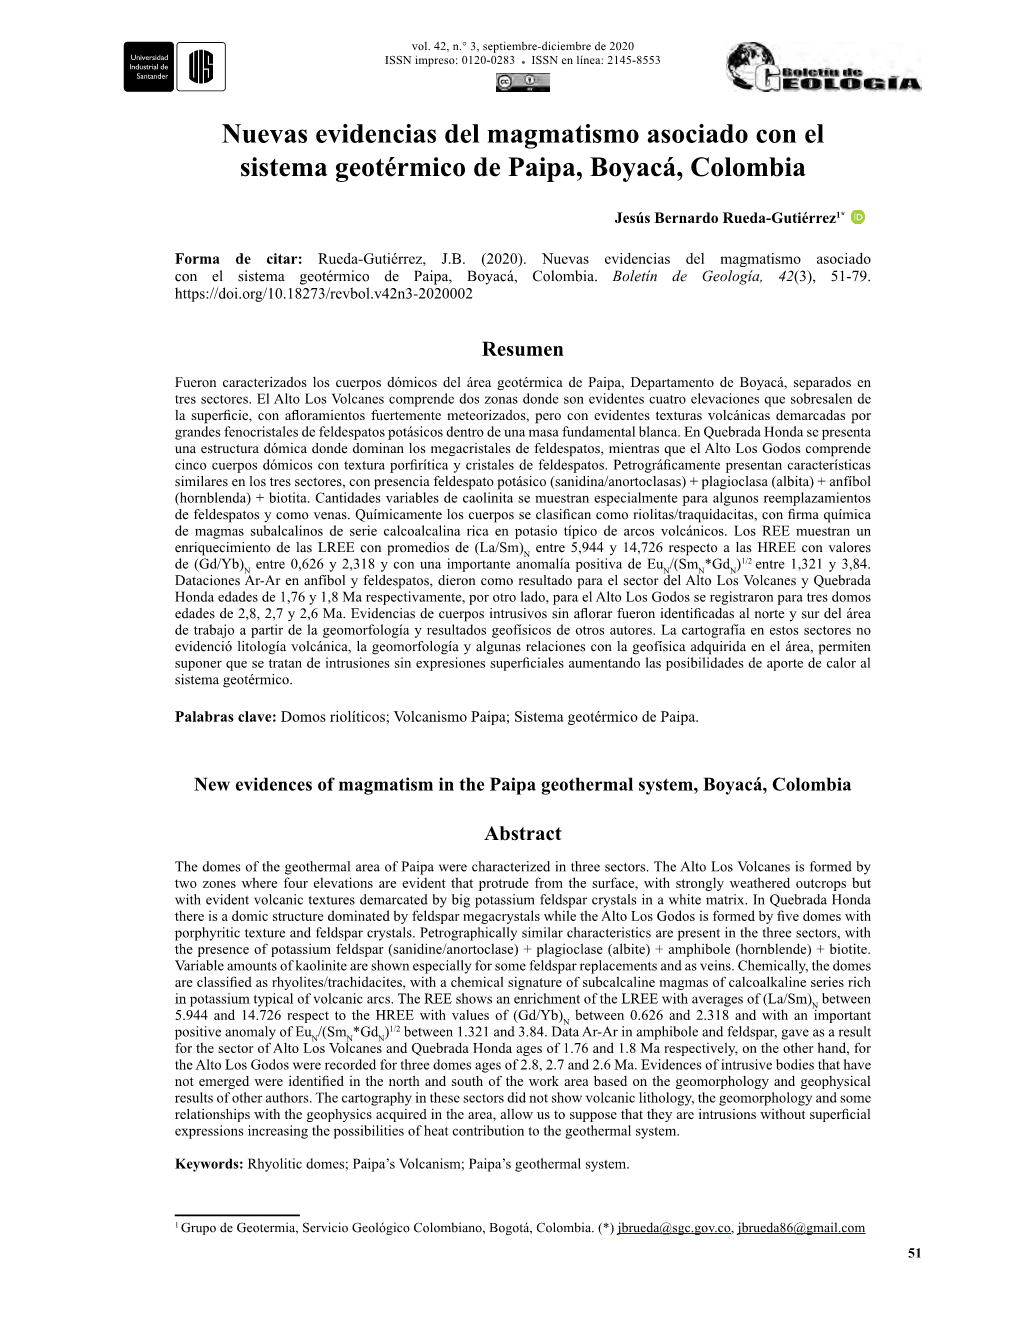 Nuevas Evidencias Del Magmatismo Asociado Con El Sistema Geotérmico De Paipa, Boyacá, Colombia